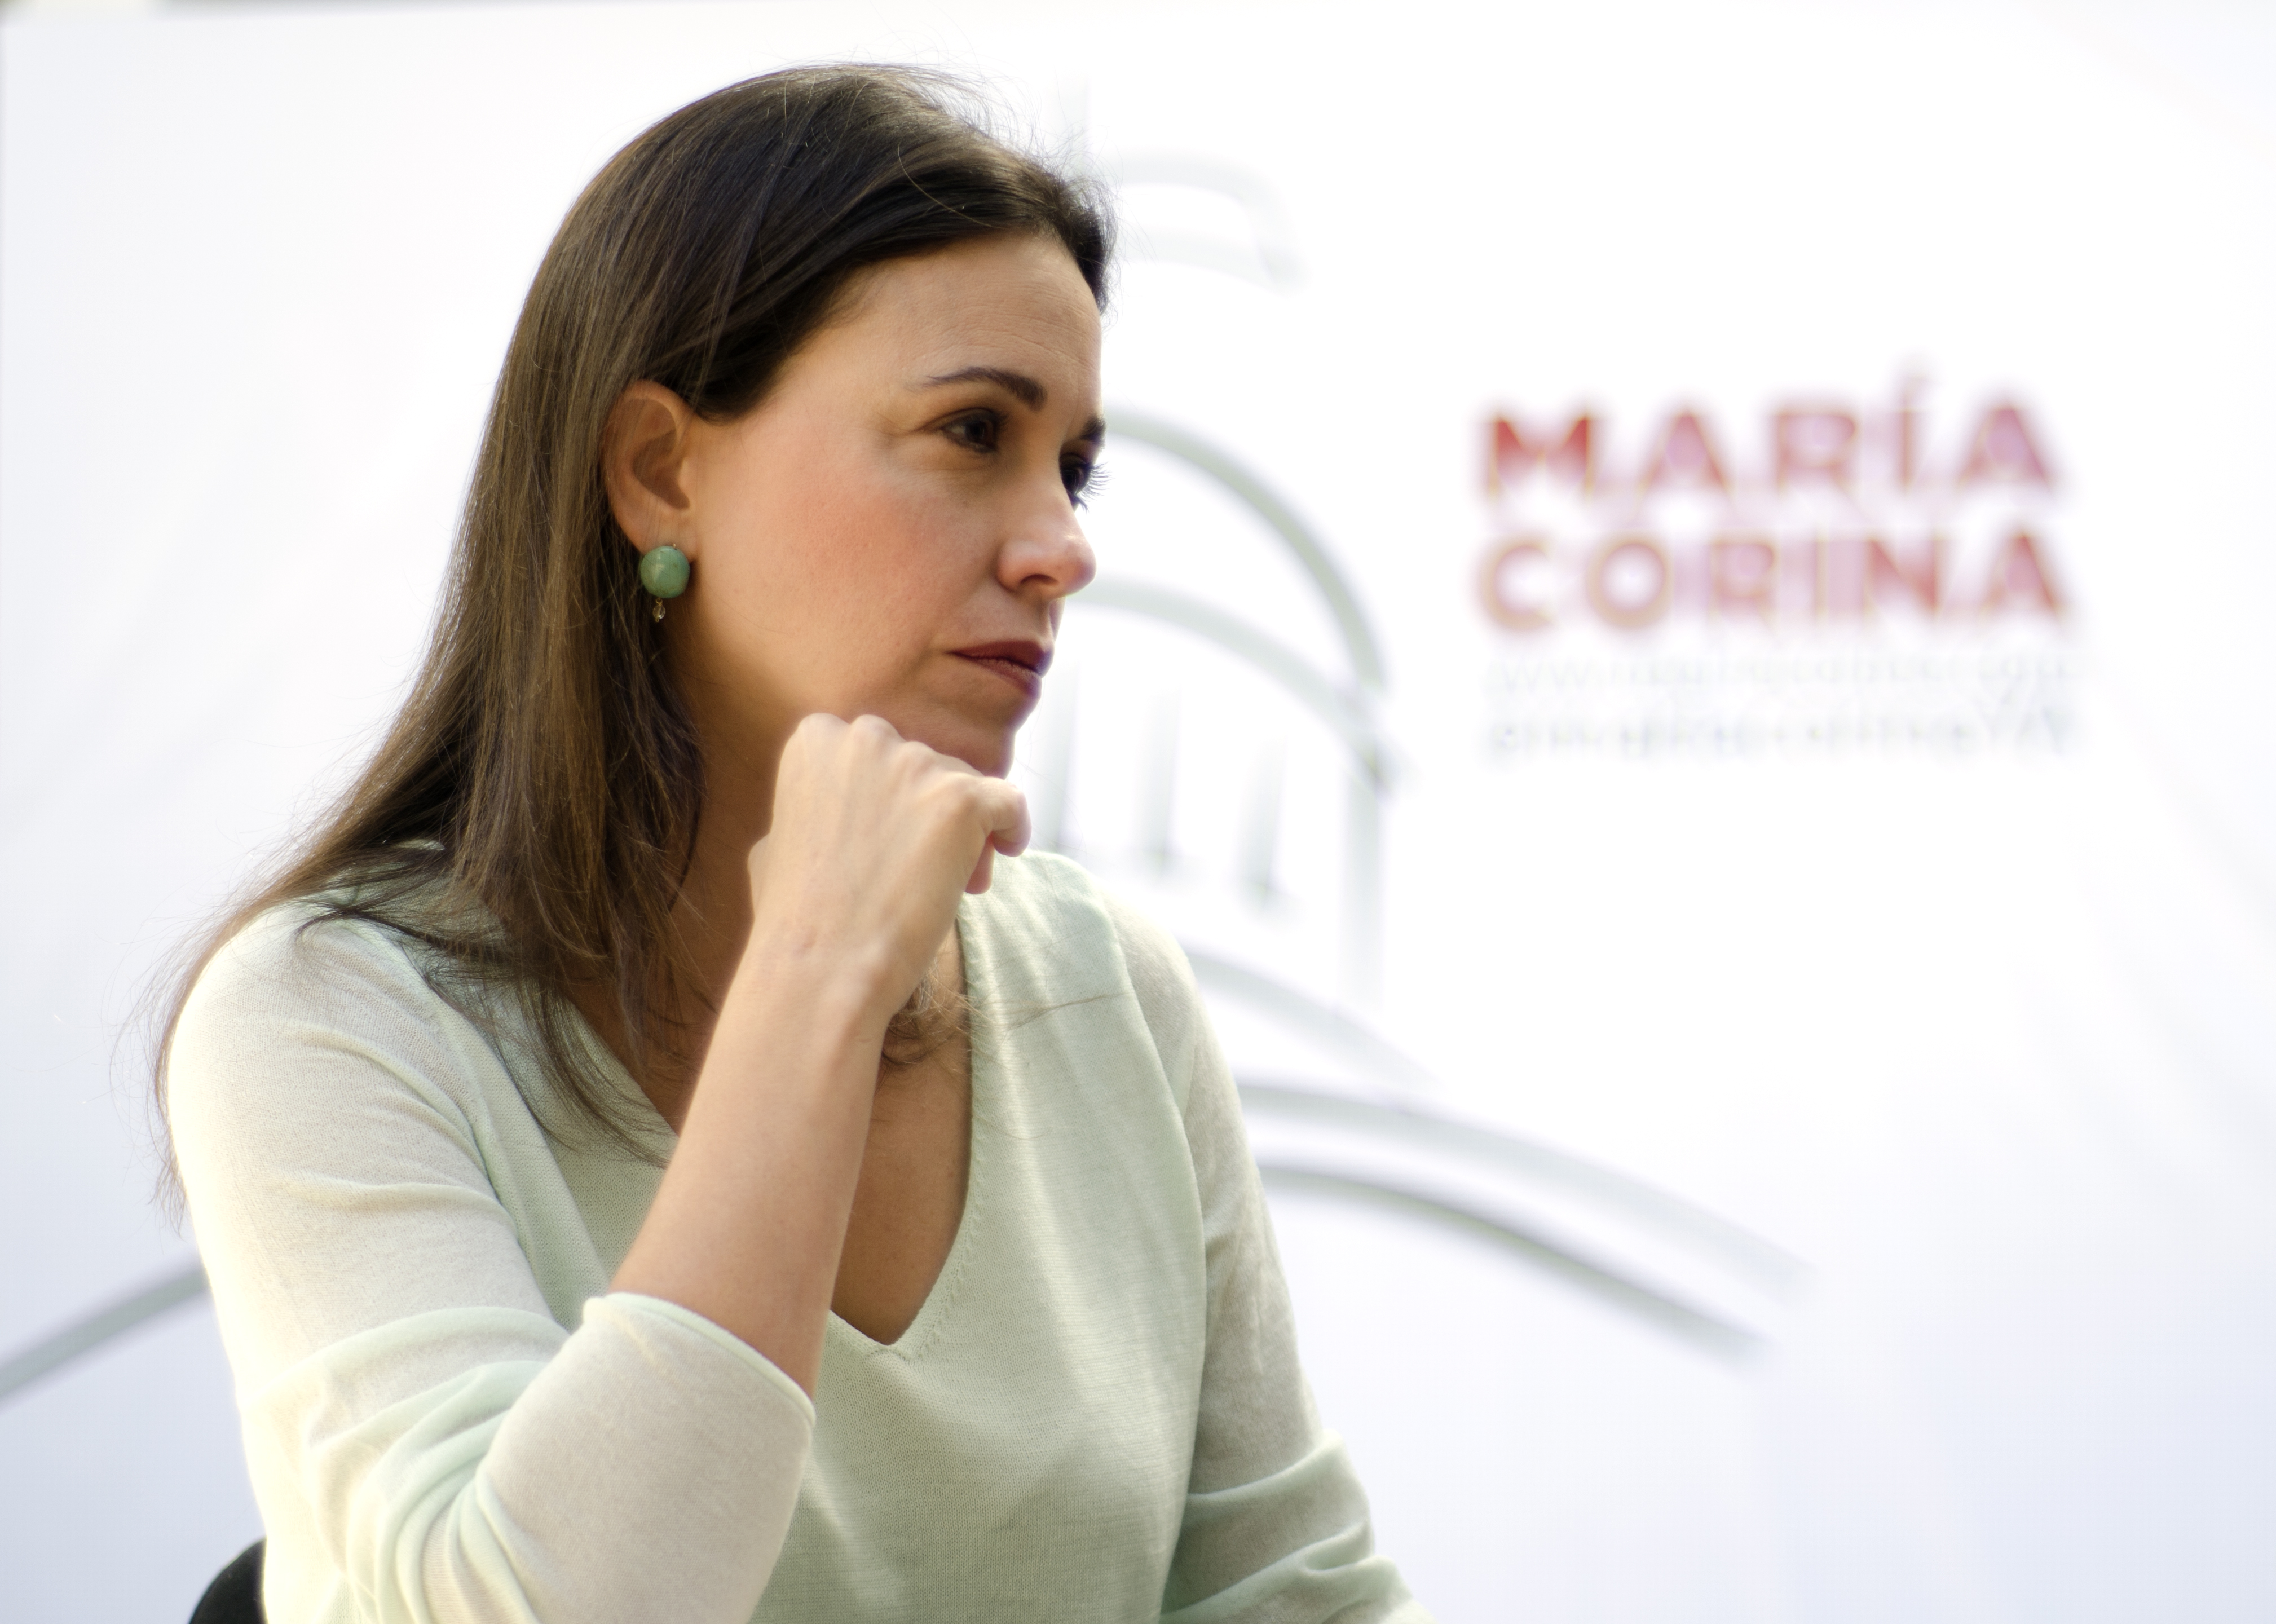 “Declaraciones de Lula son una injerencia inadmisible”: María Corina Machado